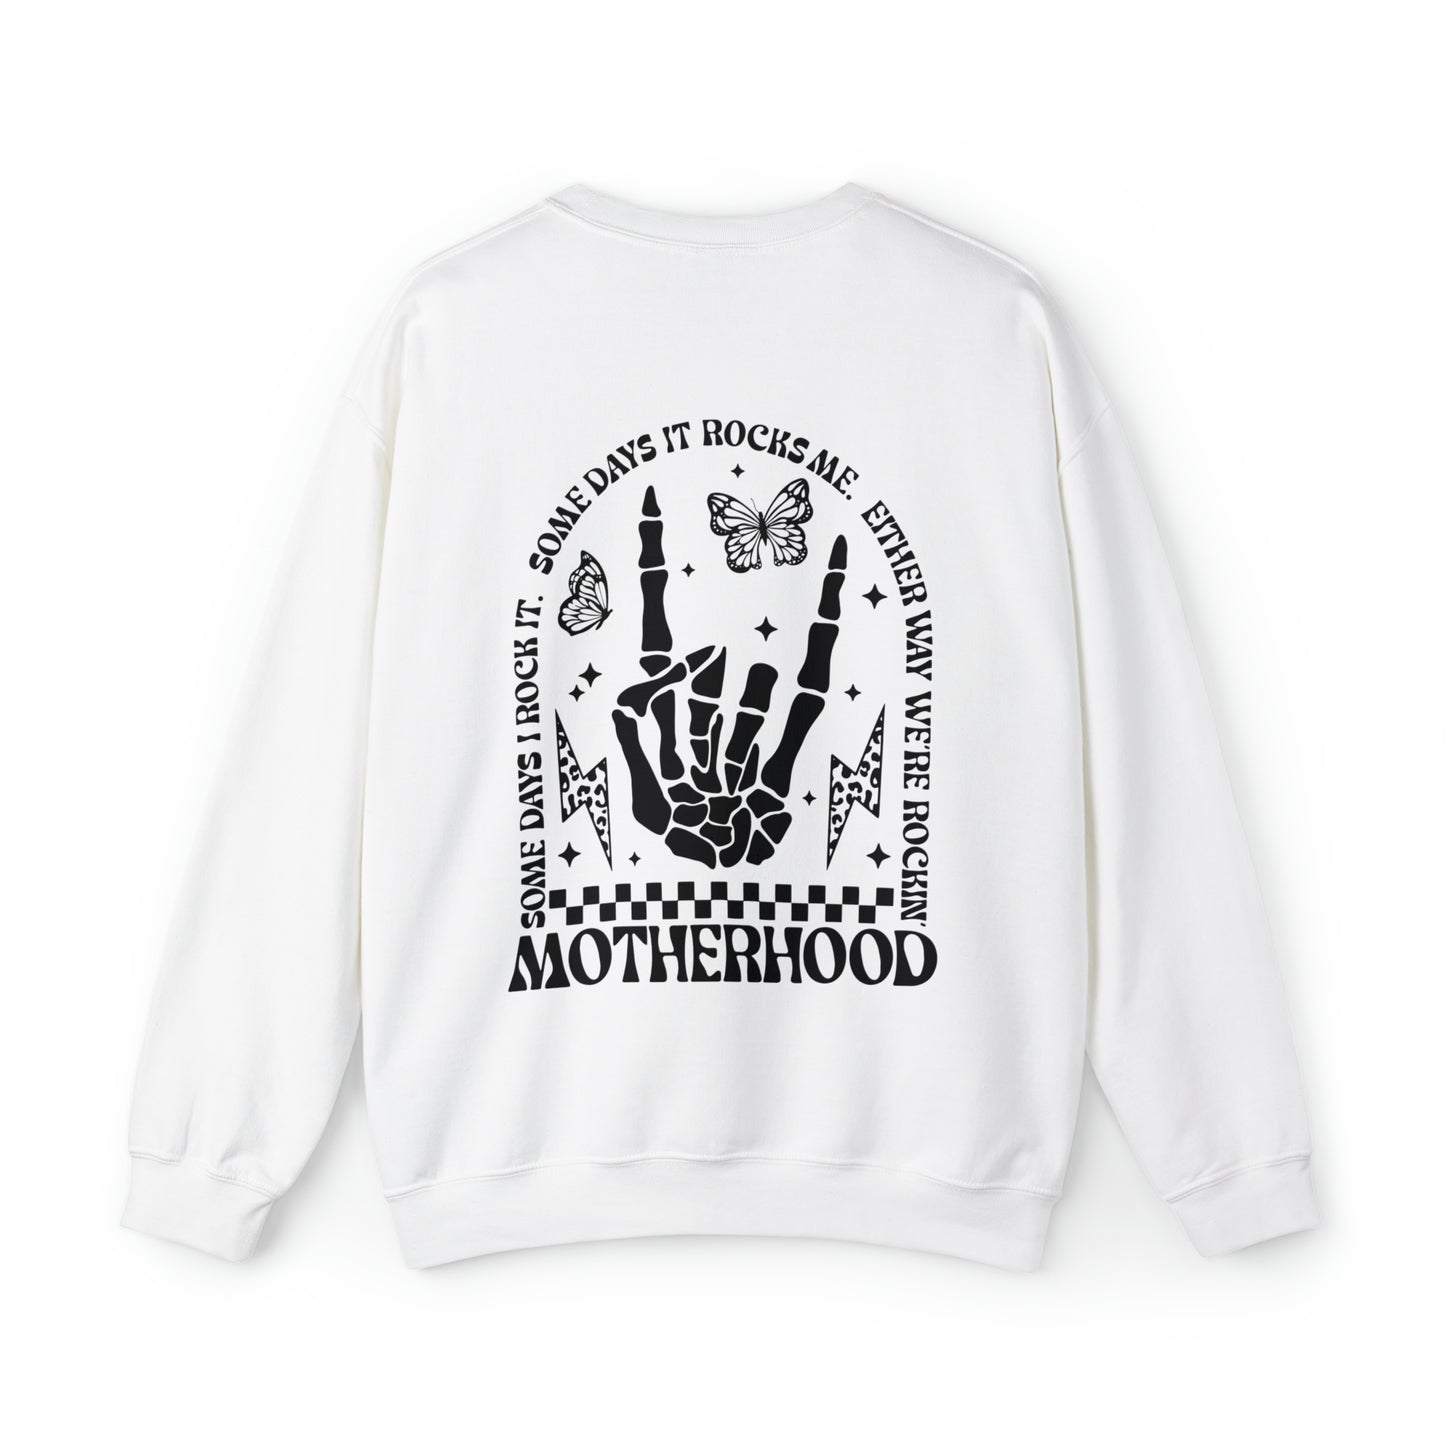 Motherhood Rocks Unisex Crewneck Sweatshirt